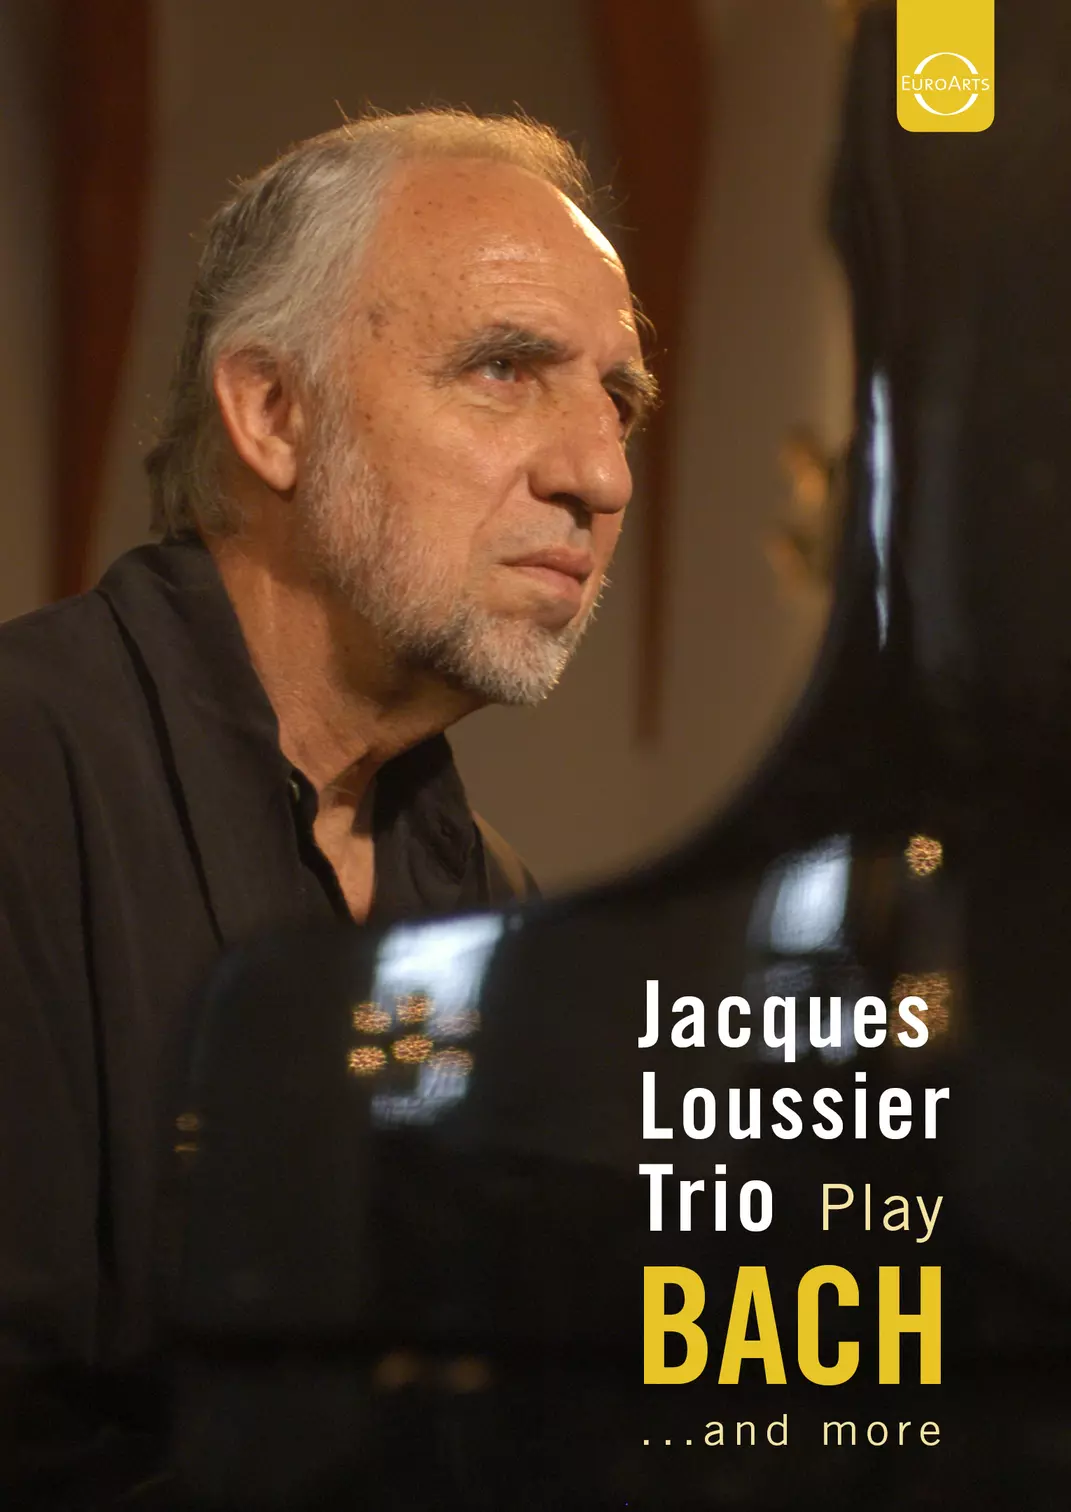 Jacques Loussier Trio plays Bach